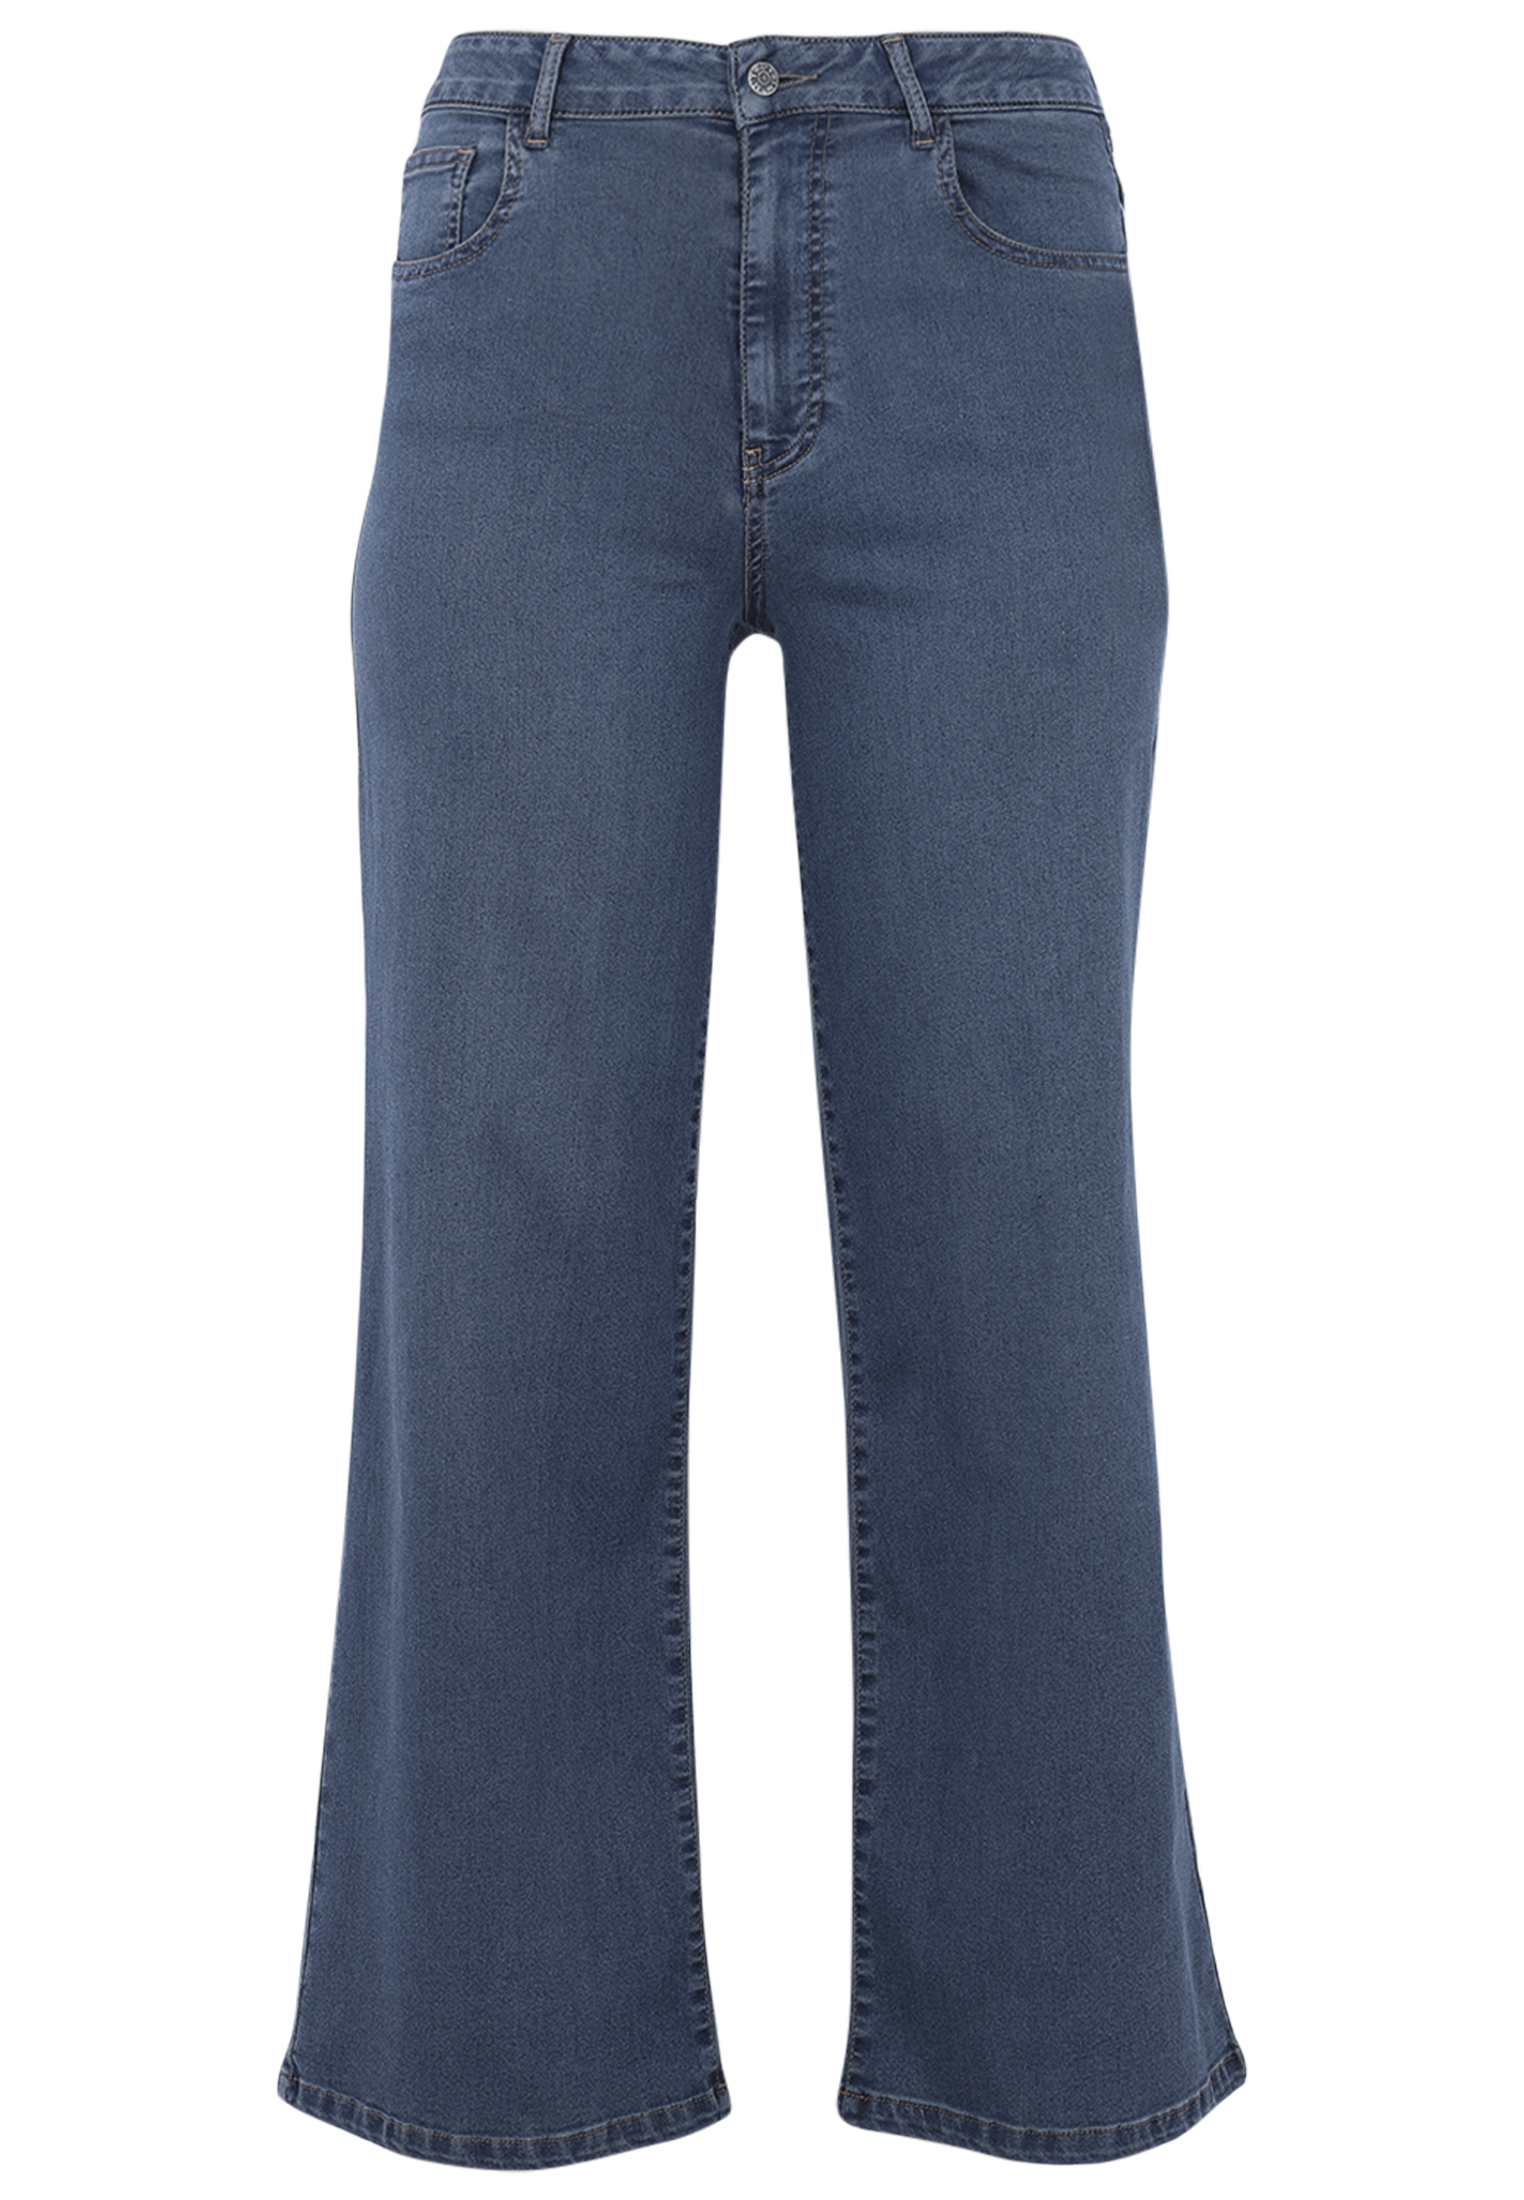 Yoek | Jeans 5 pockets wide leg